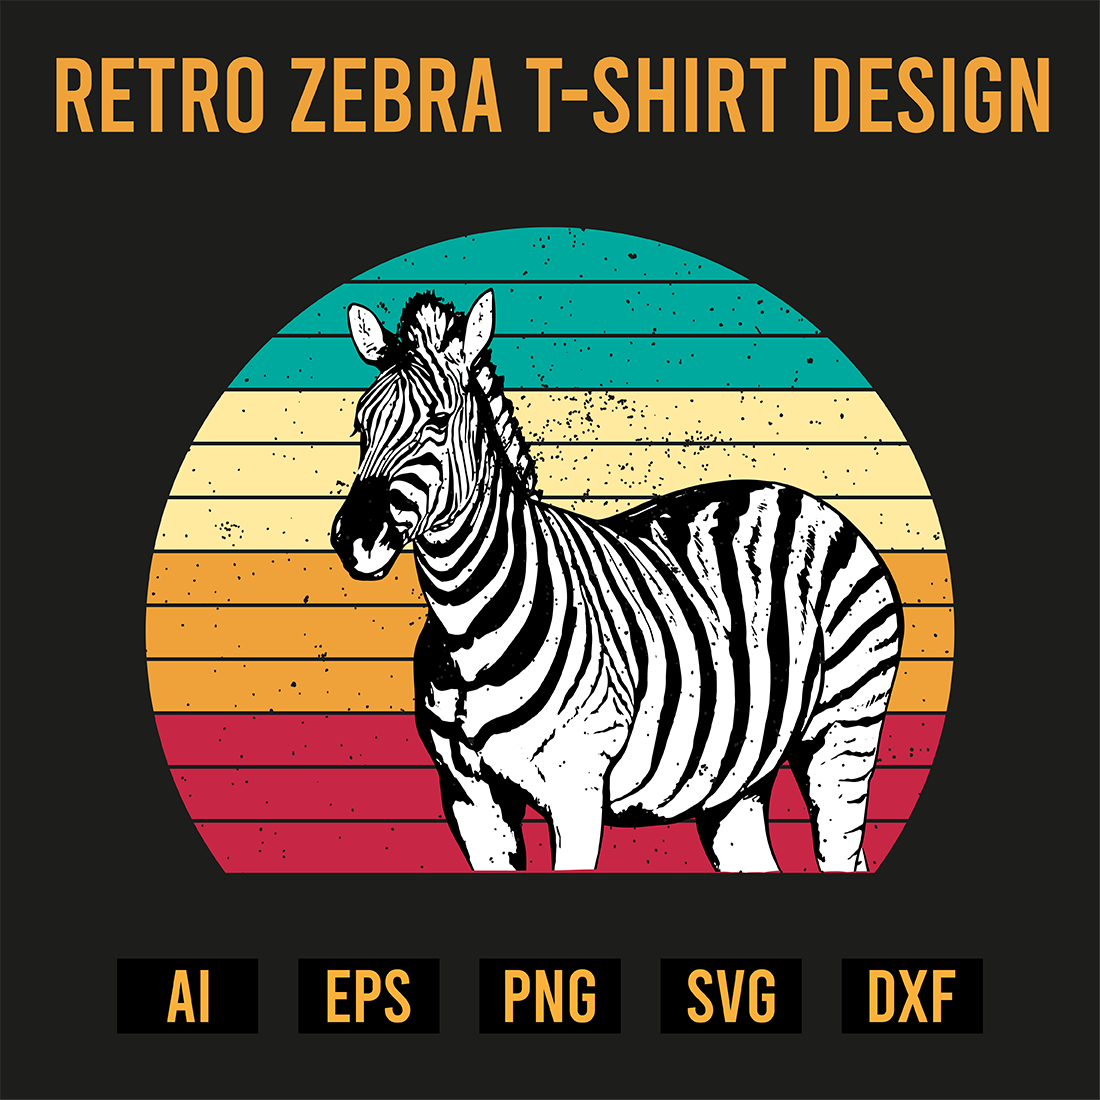 Retro Zebra T-Shirt Design preview image.